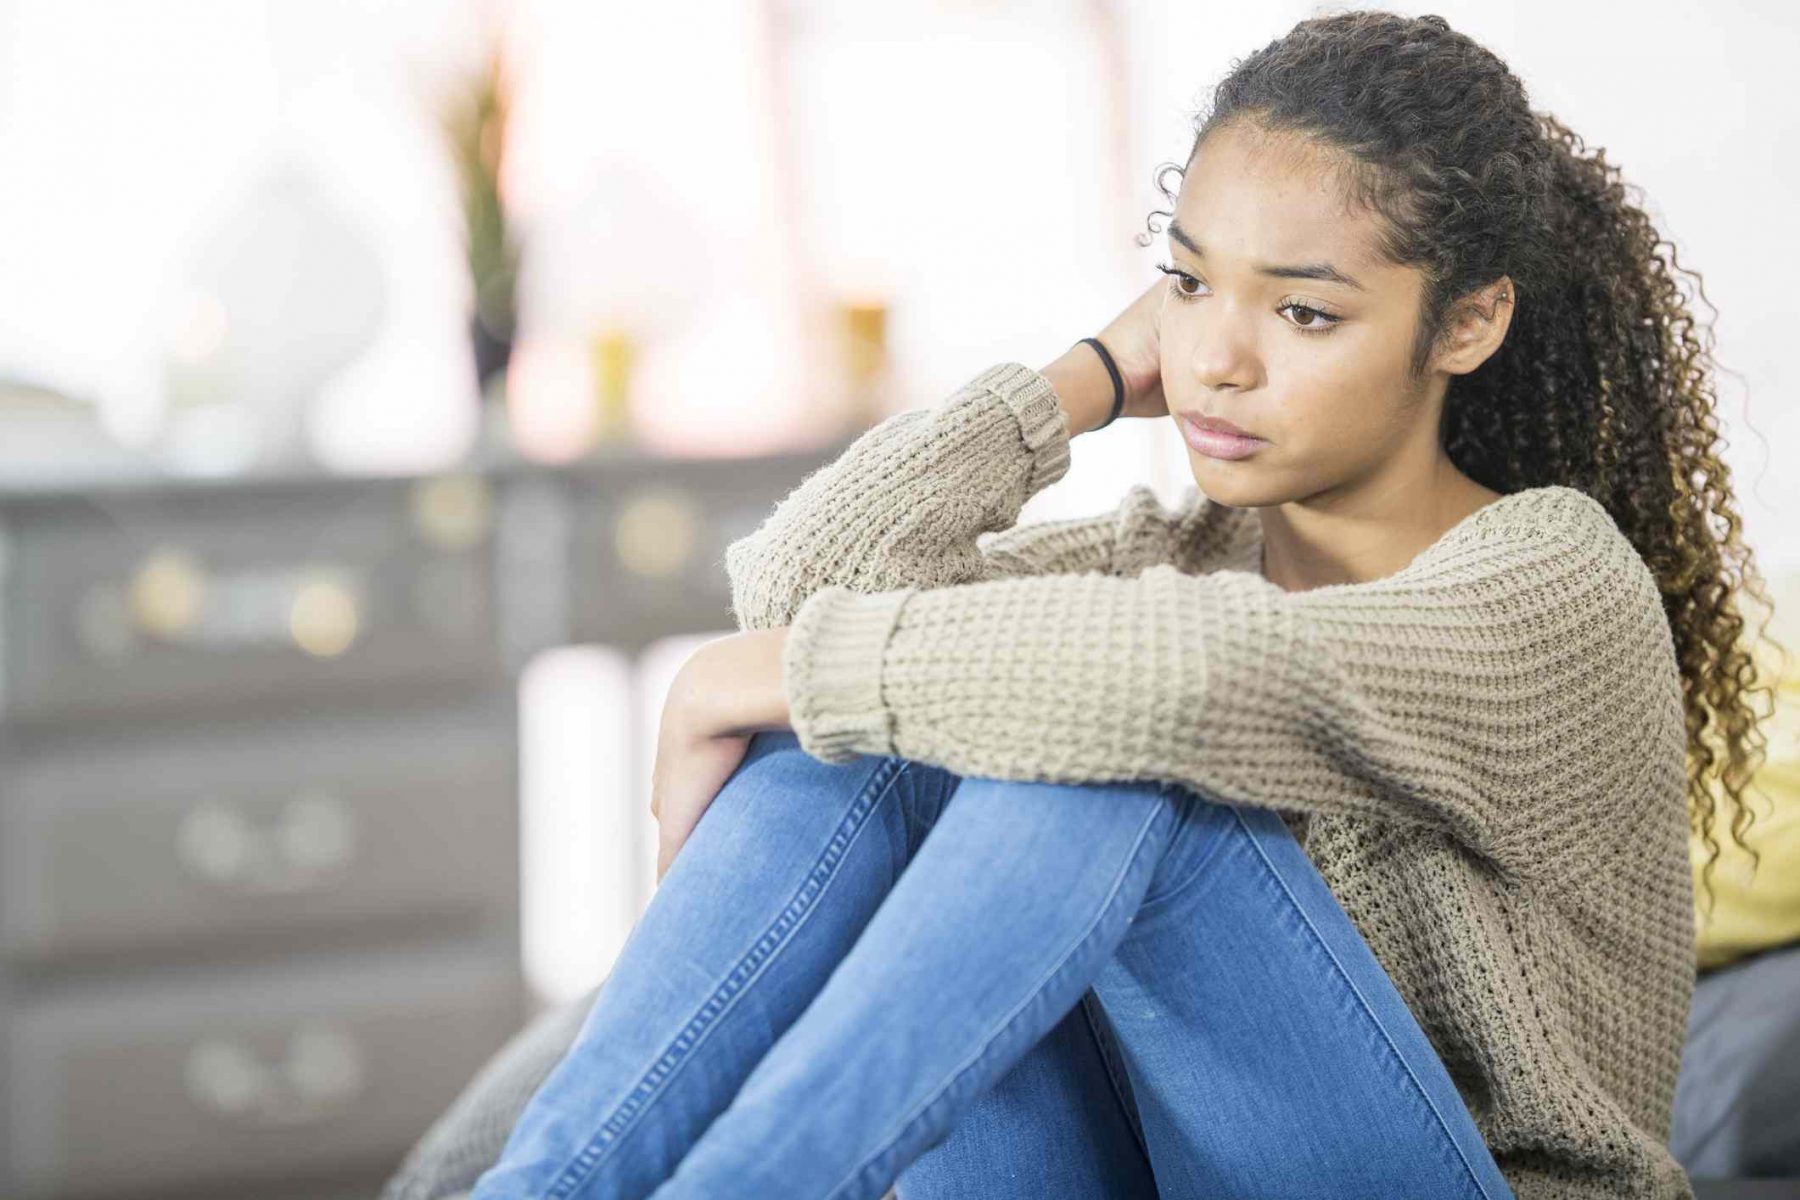 ΗΠΑ: Μεγάλη άνοδος στα έφηβα κορίτσια που αναφέρουν βία & θλίψη